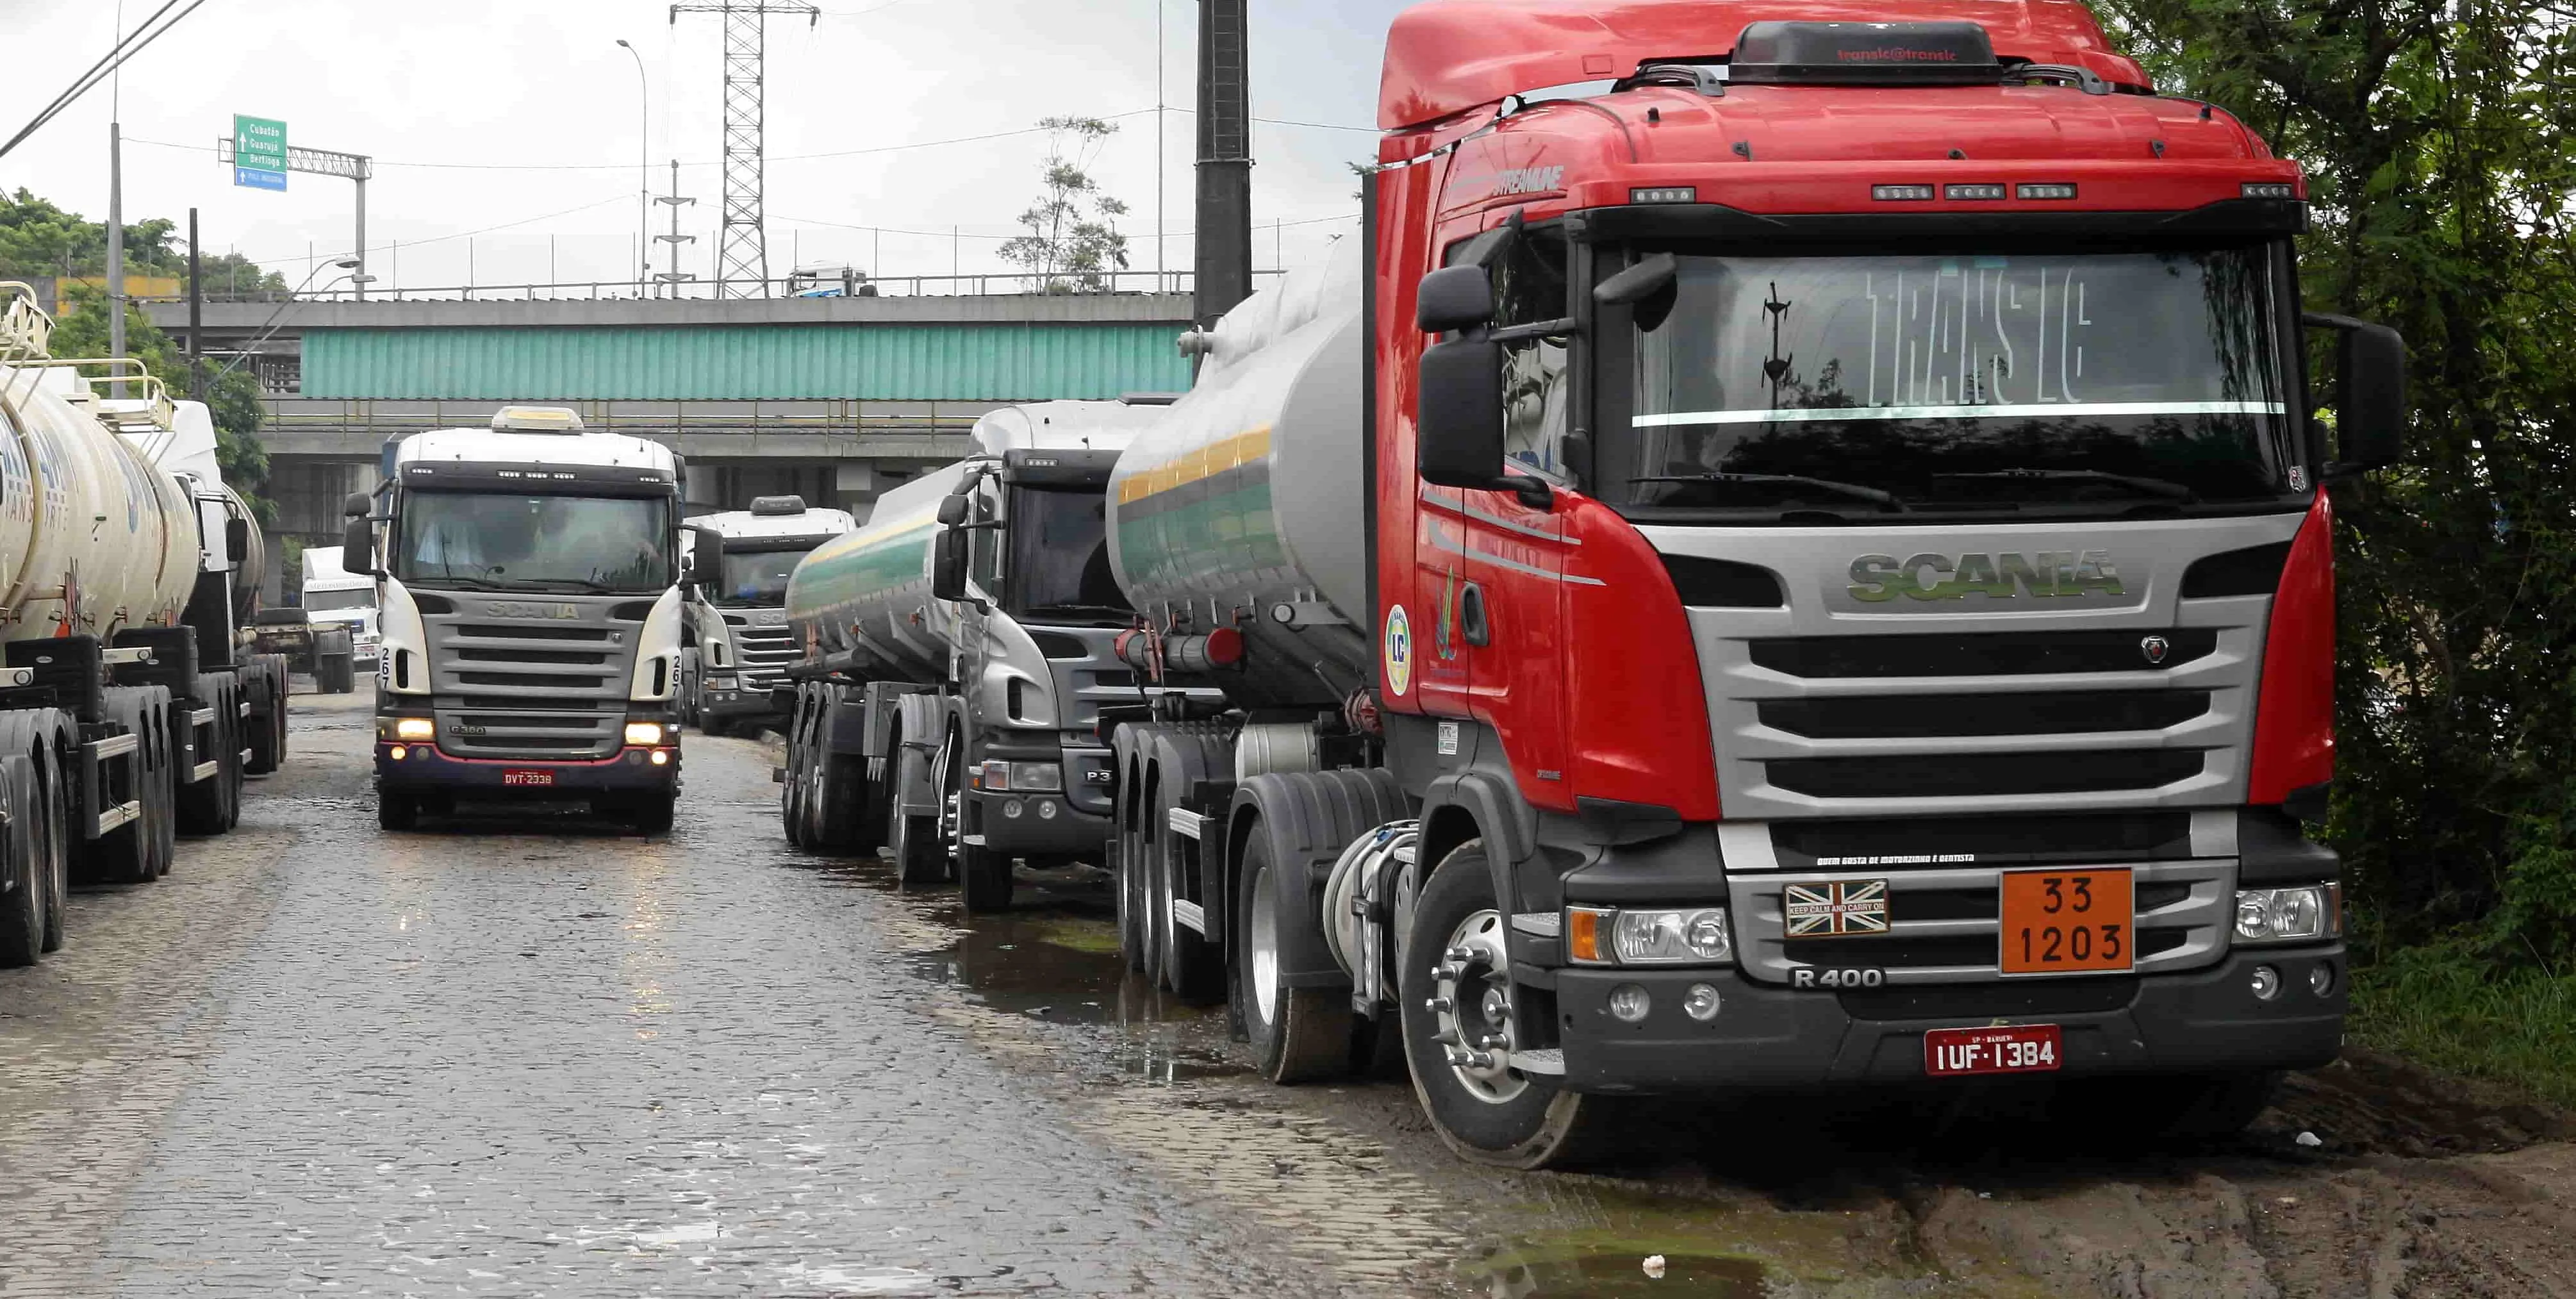  Caminhões no Porto: motoristas também planejam atos na região 